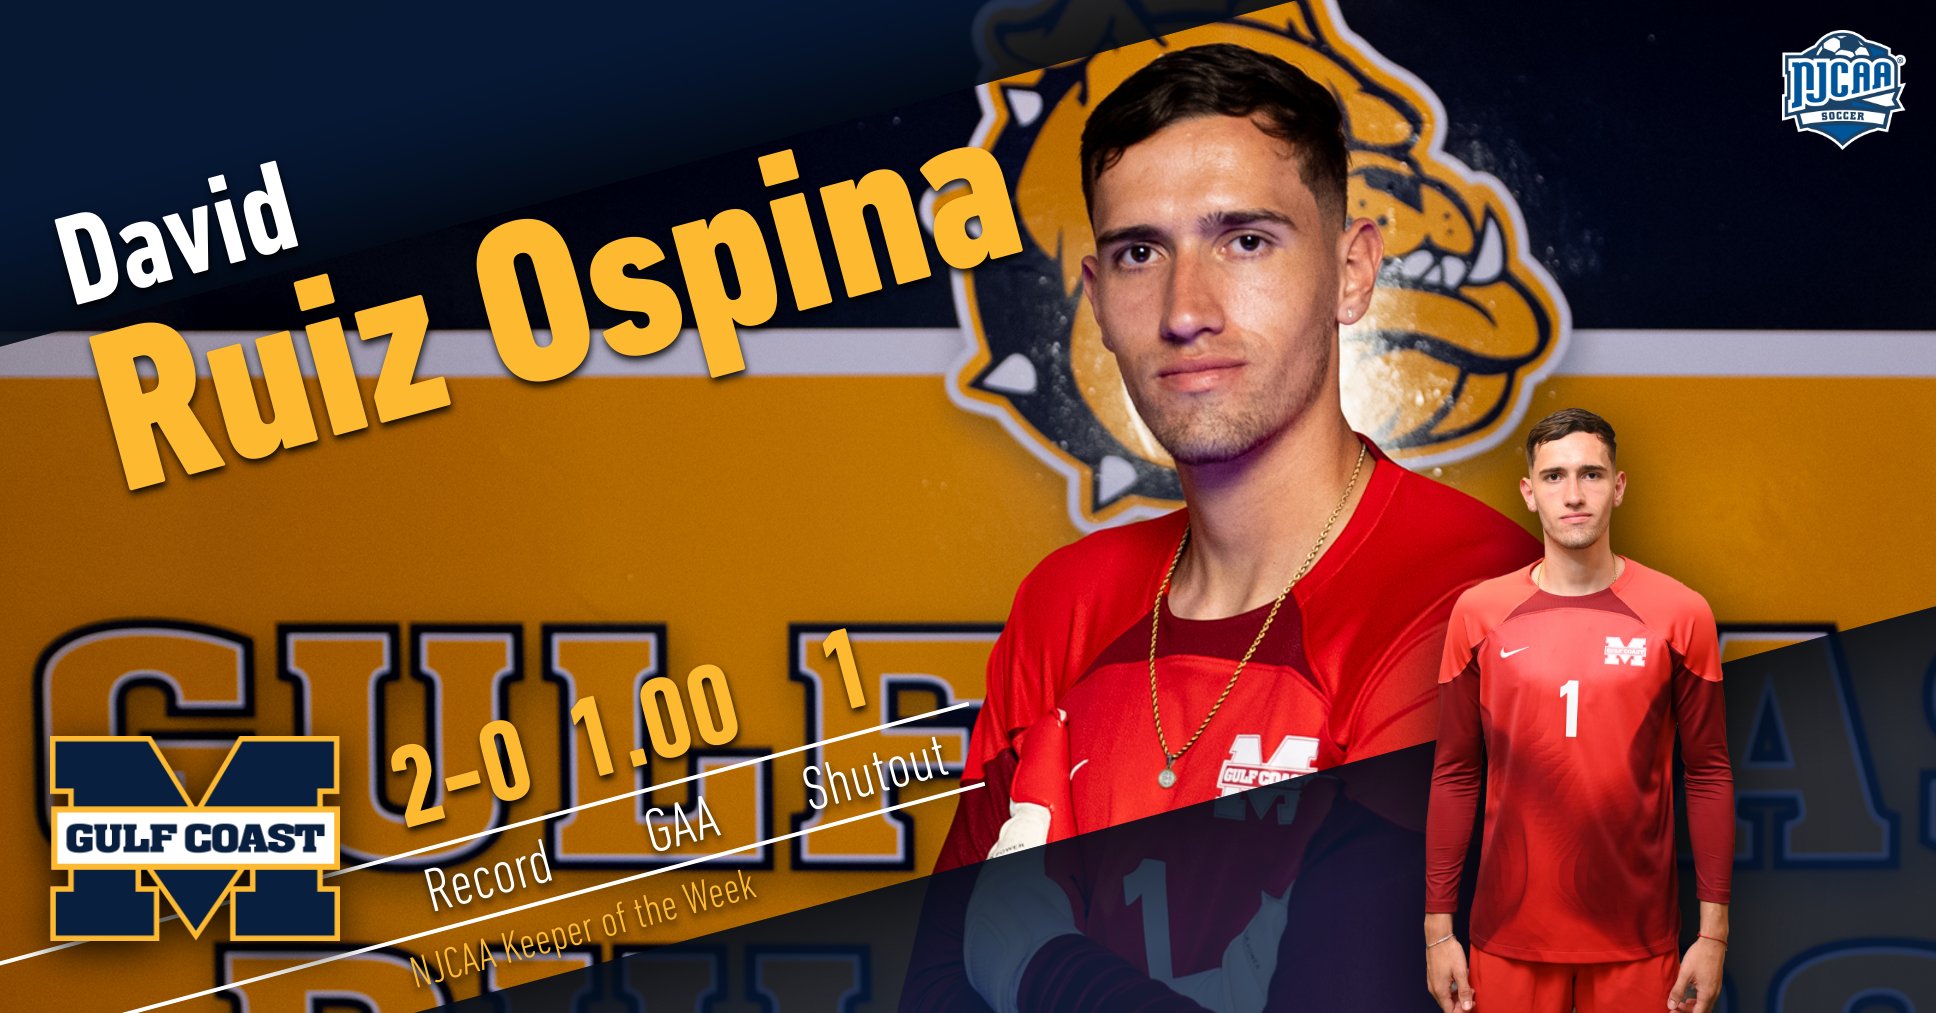 Ruiz Ospina named NJCAA Keeper of the Week again